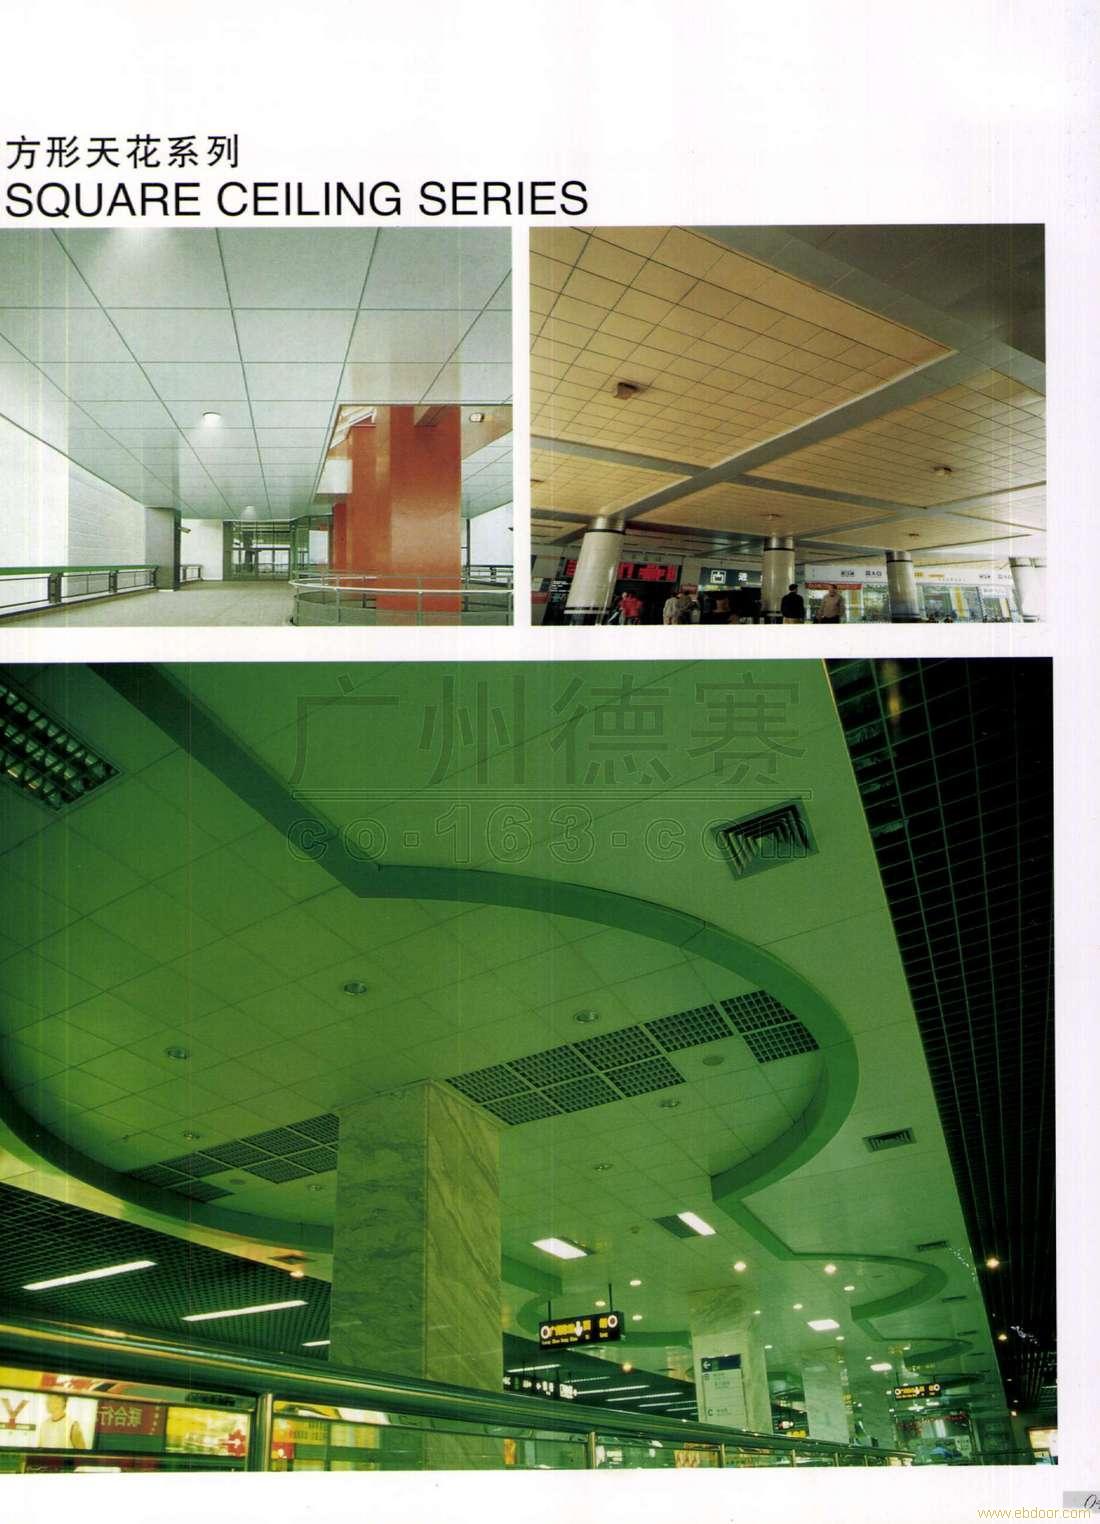 上海奥德赛方形天花板厂家直销/上海奥德赛方形天花板厂家销售